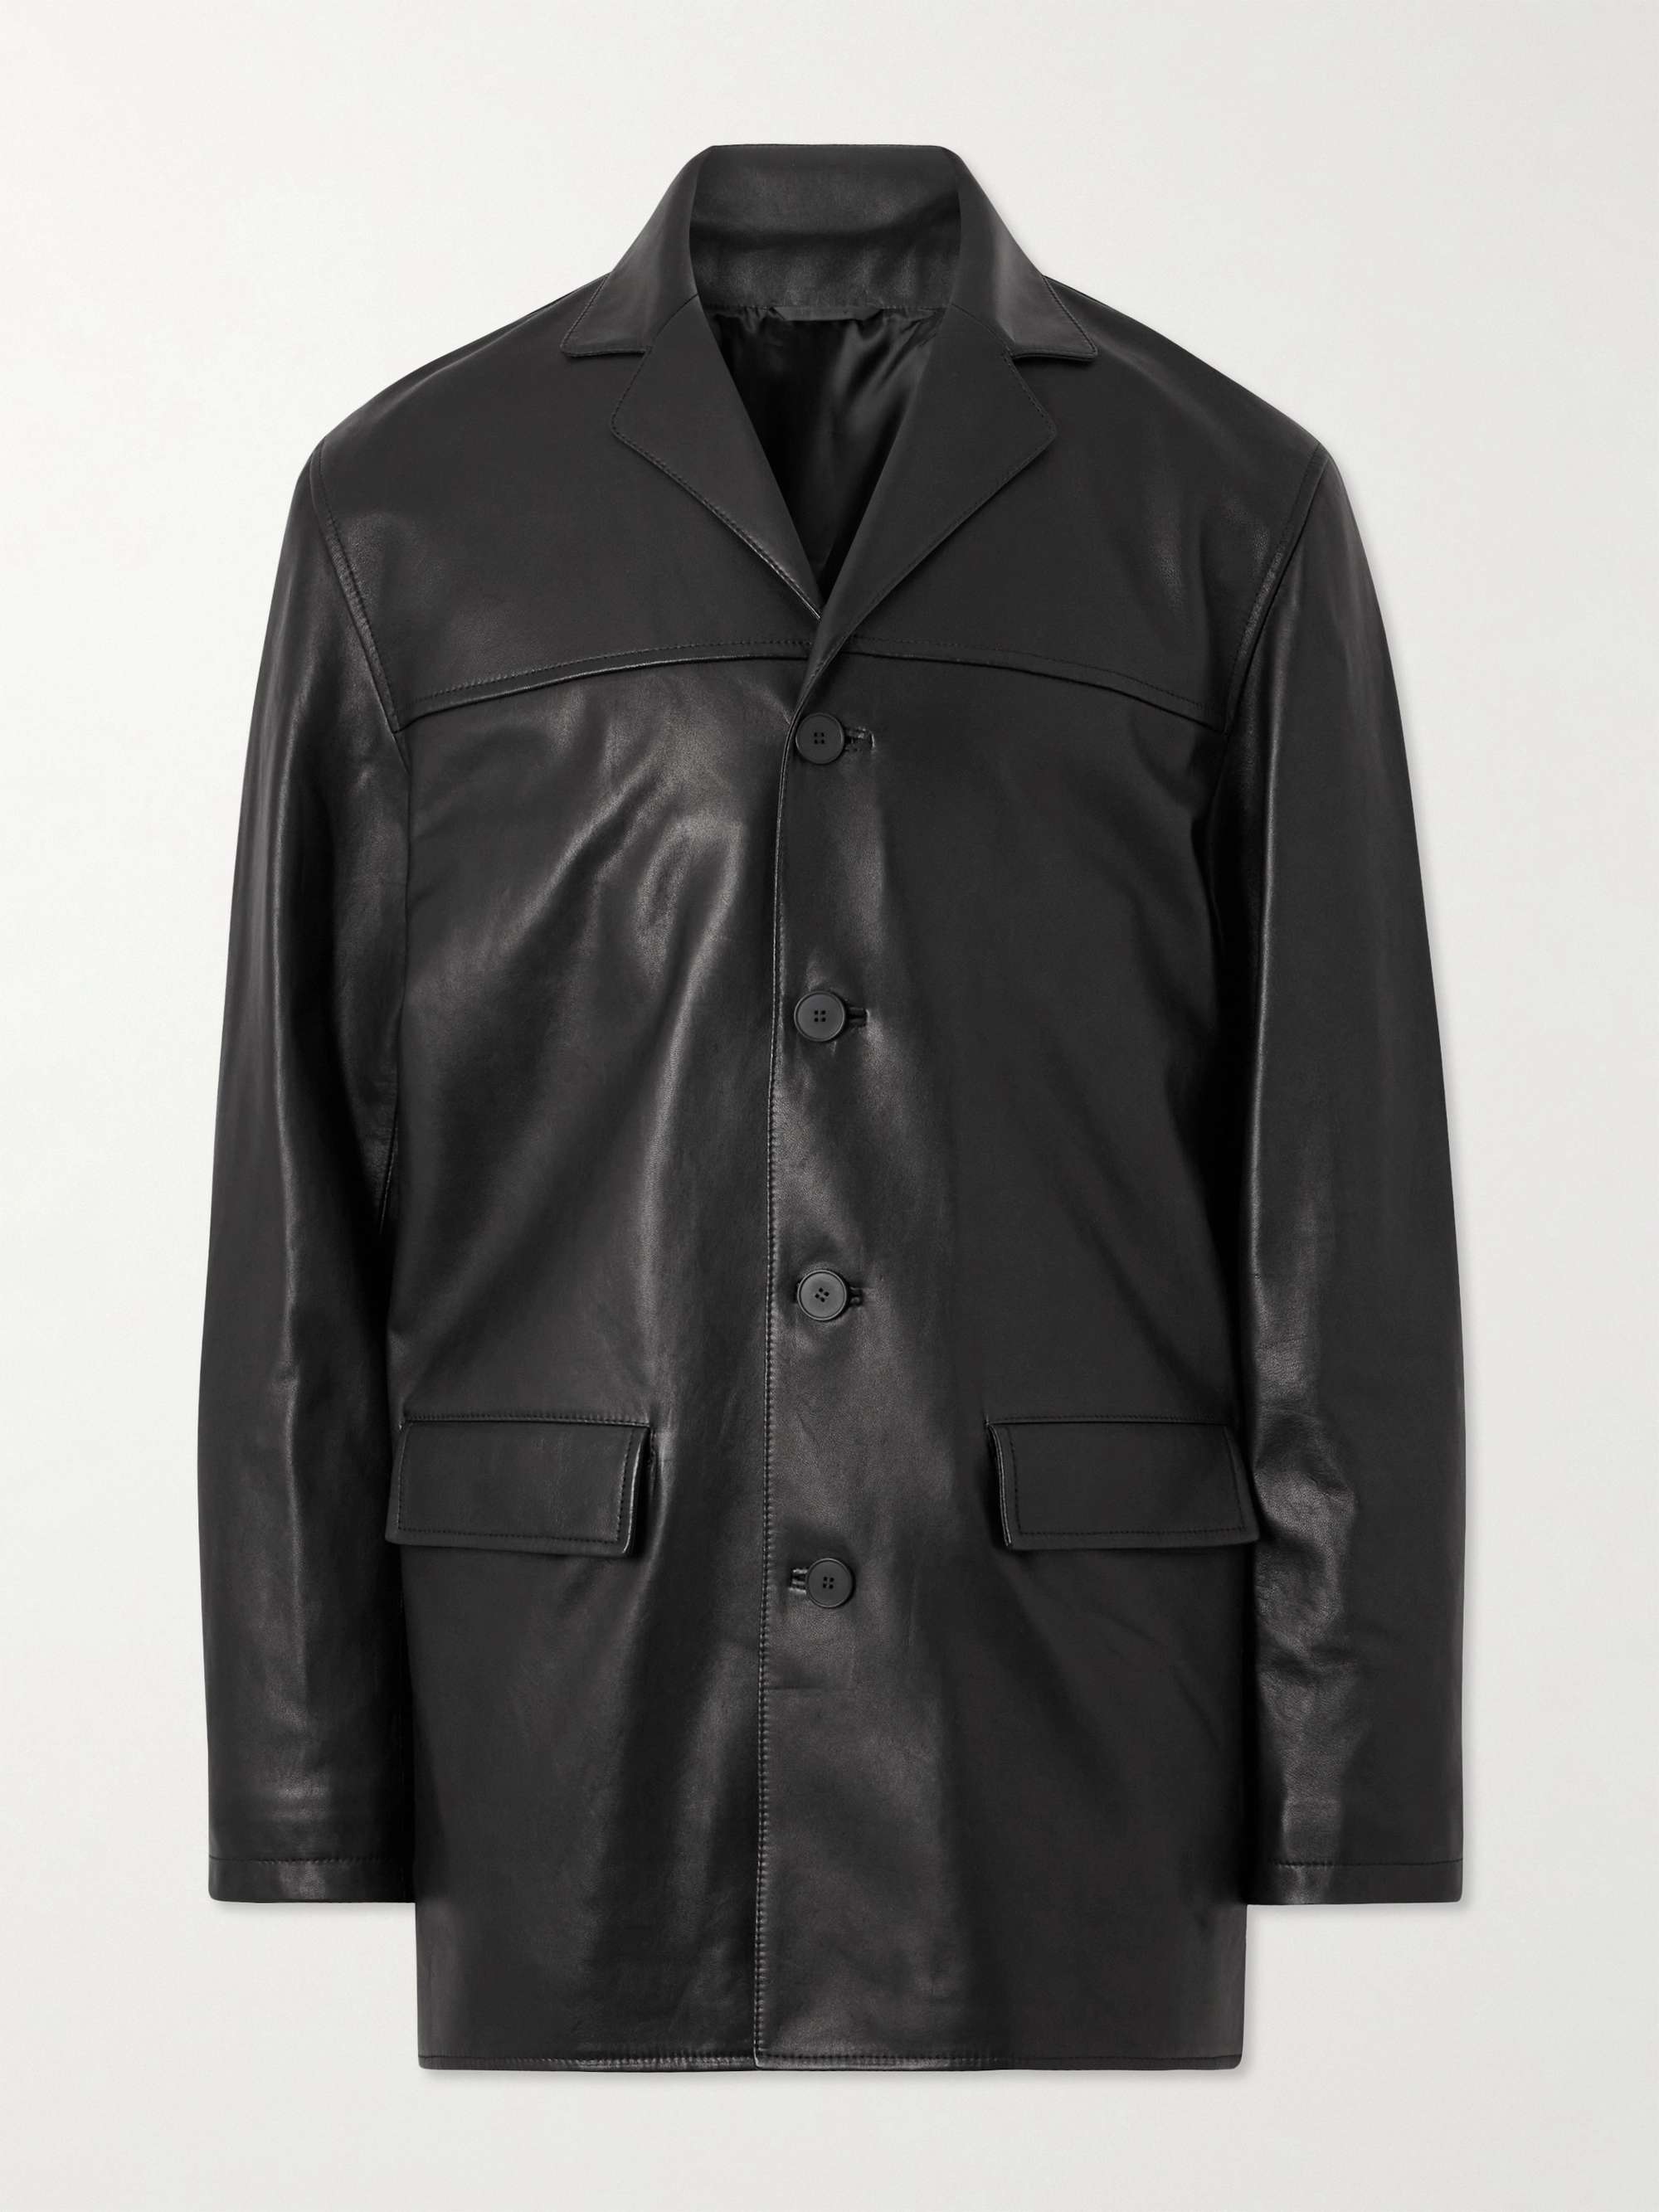 GIVENCHY Leather Jacket for Men | MR PORTER